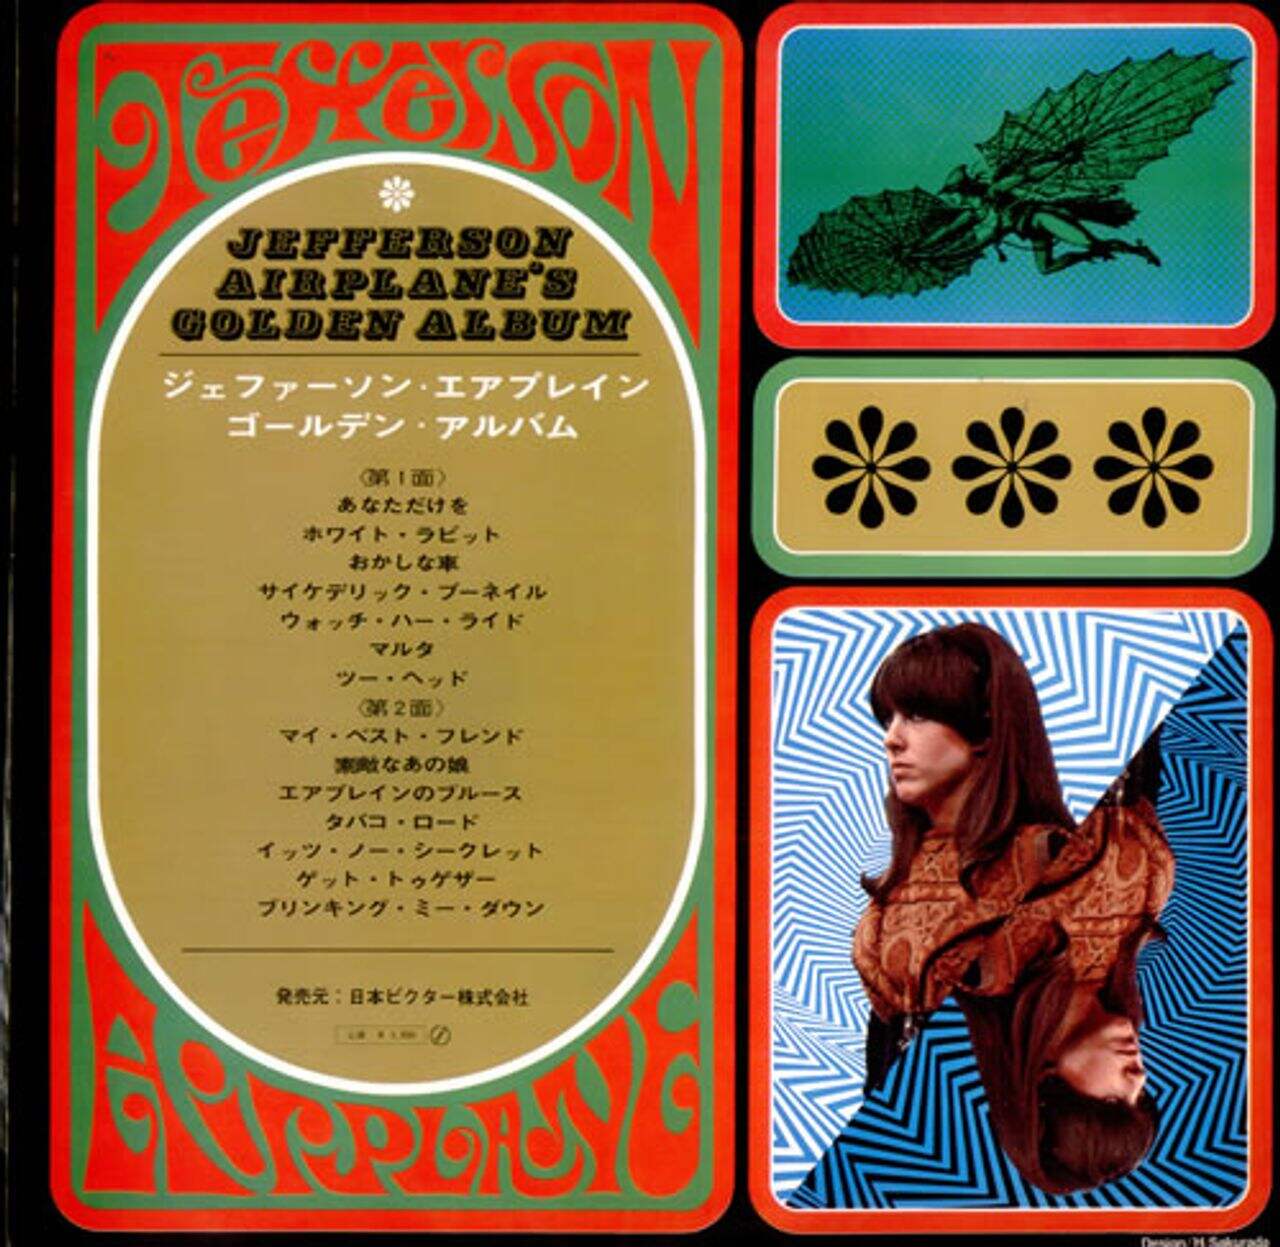 Jefferson Airplane Jefferson Airplane's Golden Album - Black Vinyl Japanese Vinyl LP